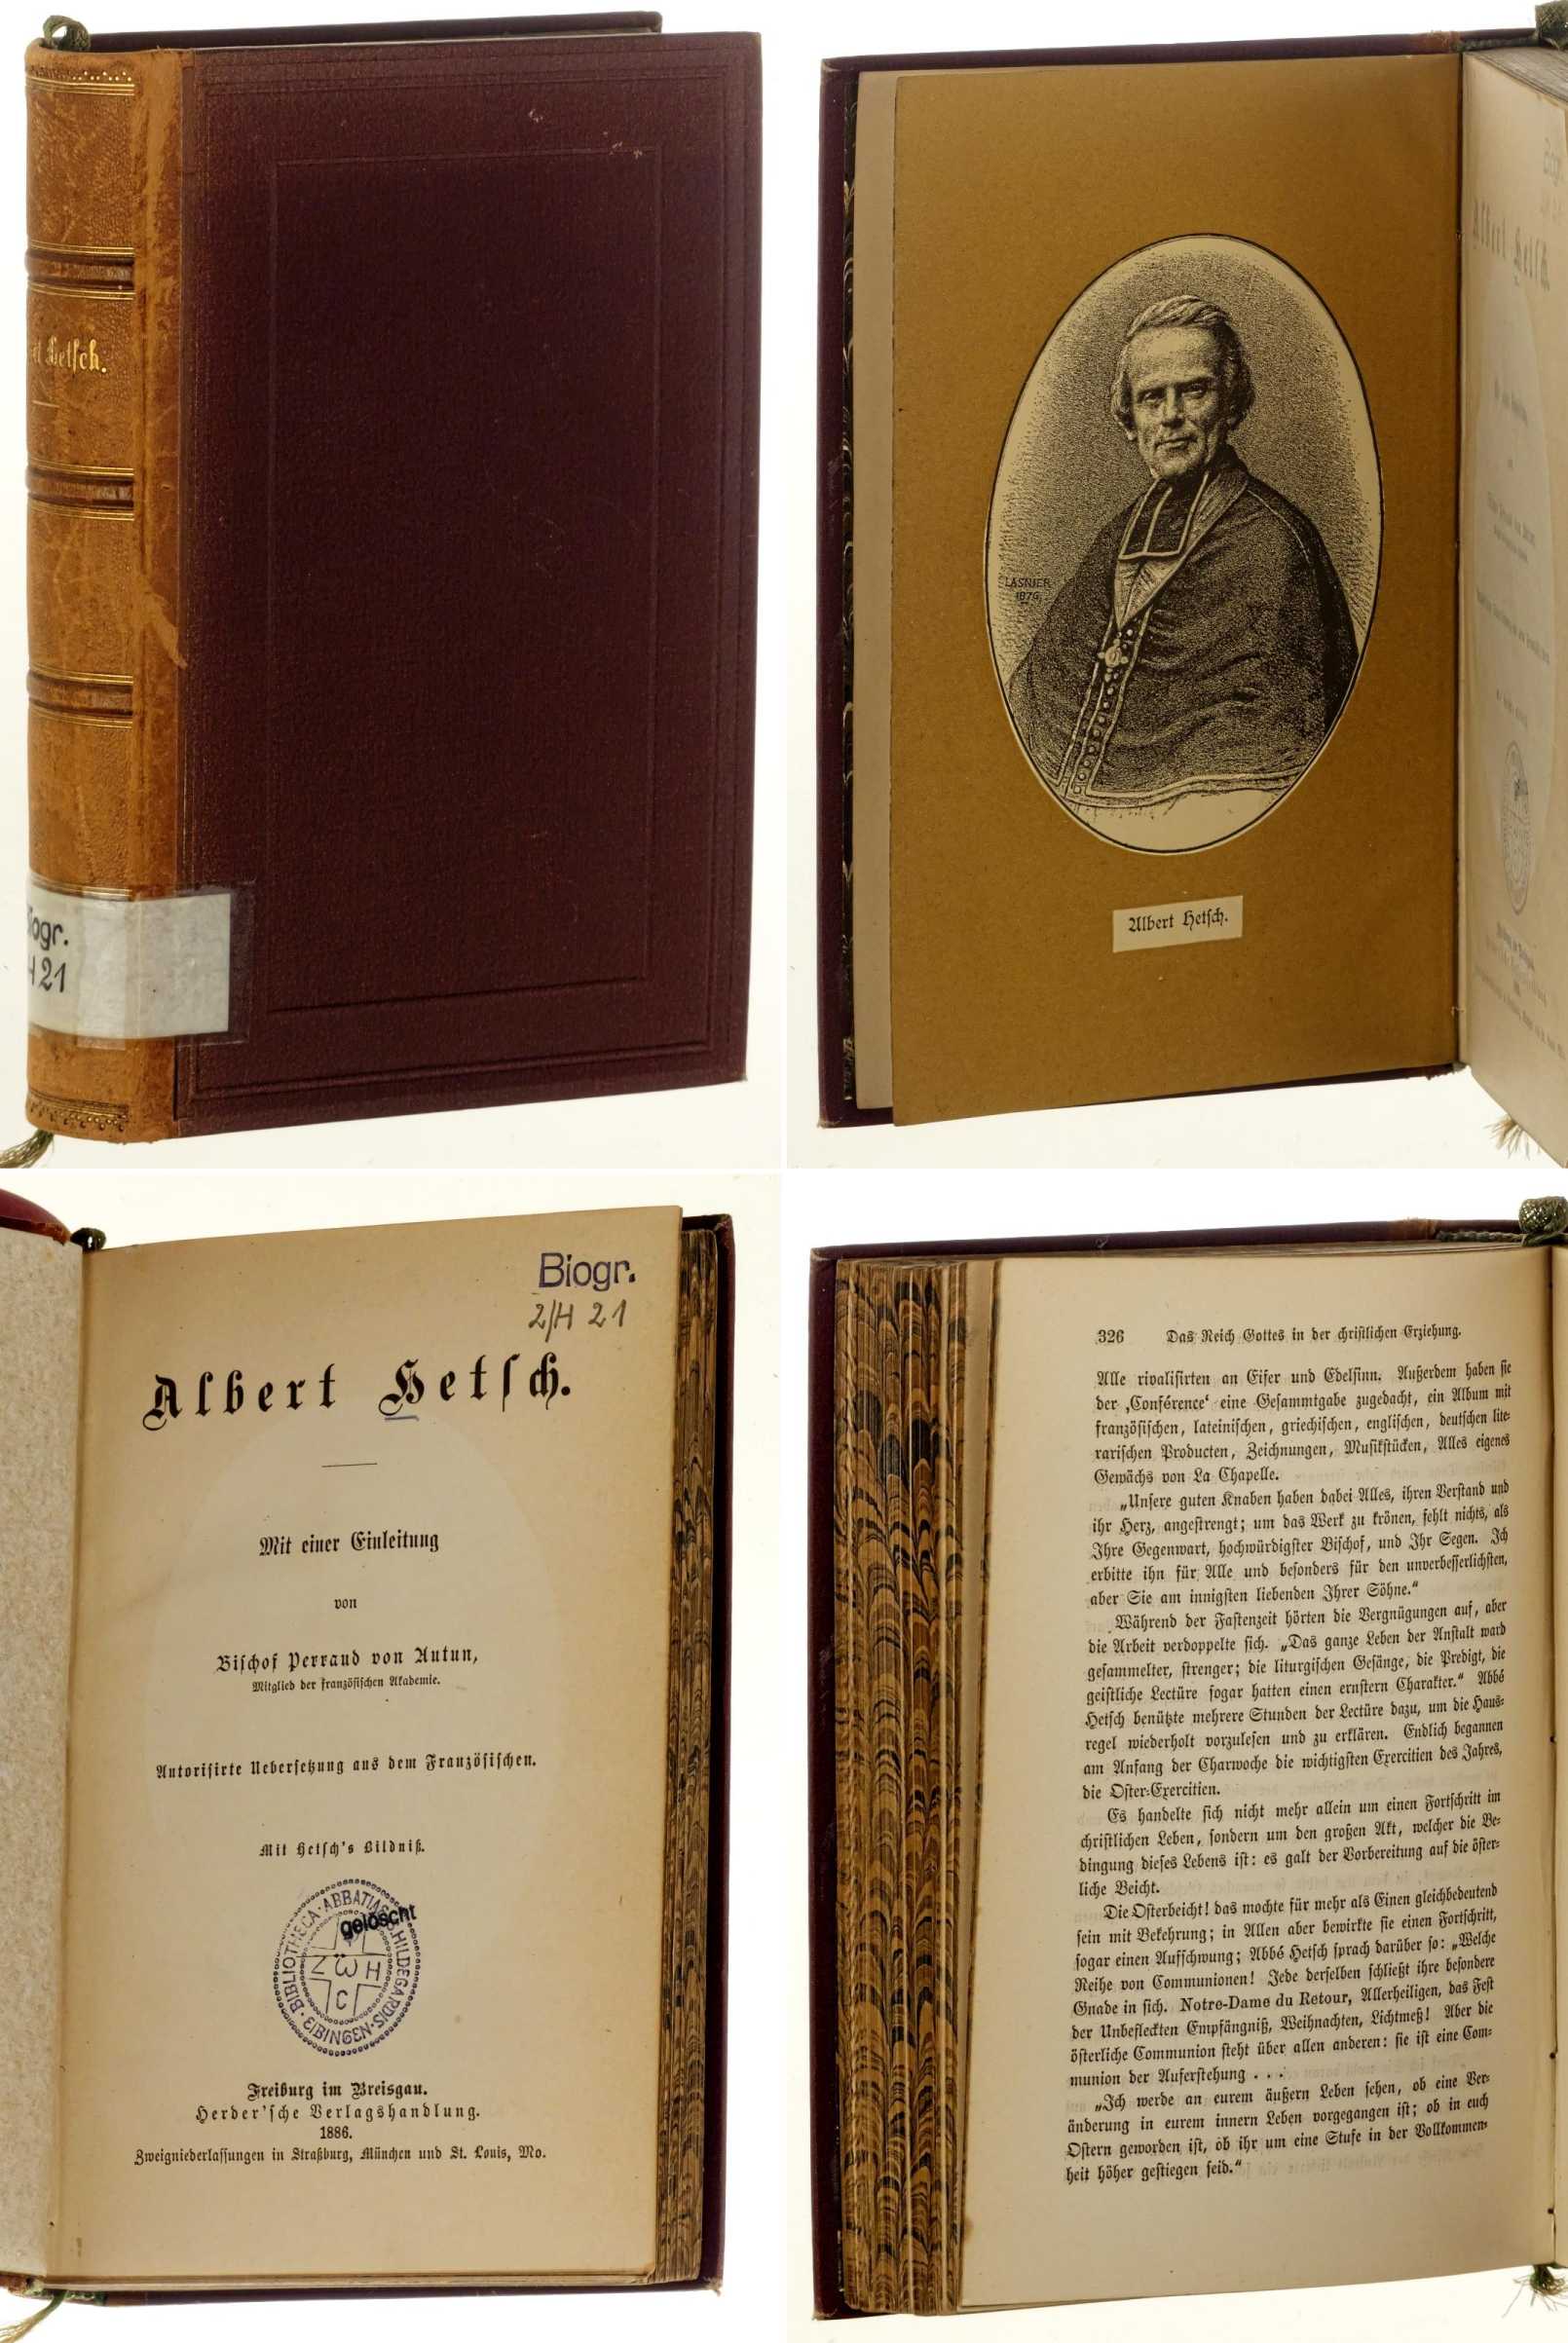 Autun, Perraud von:  Albert Hetsch. Autor. Uebers. aus d. Franz. 